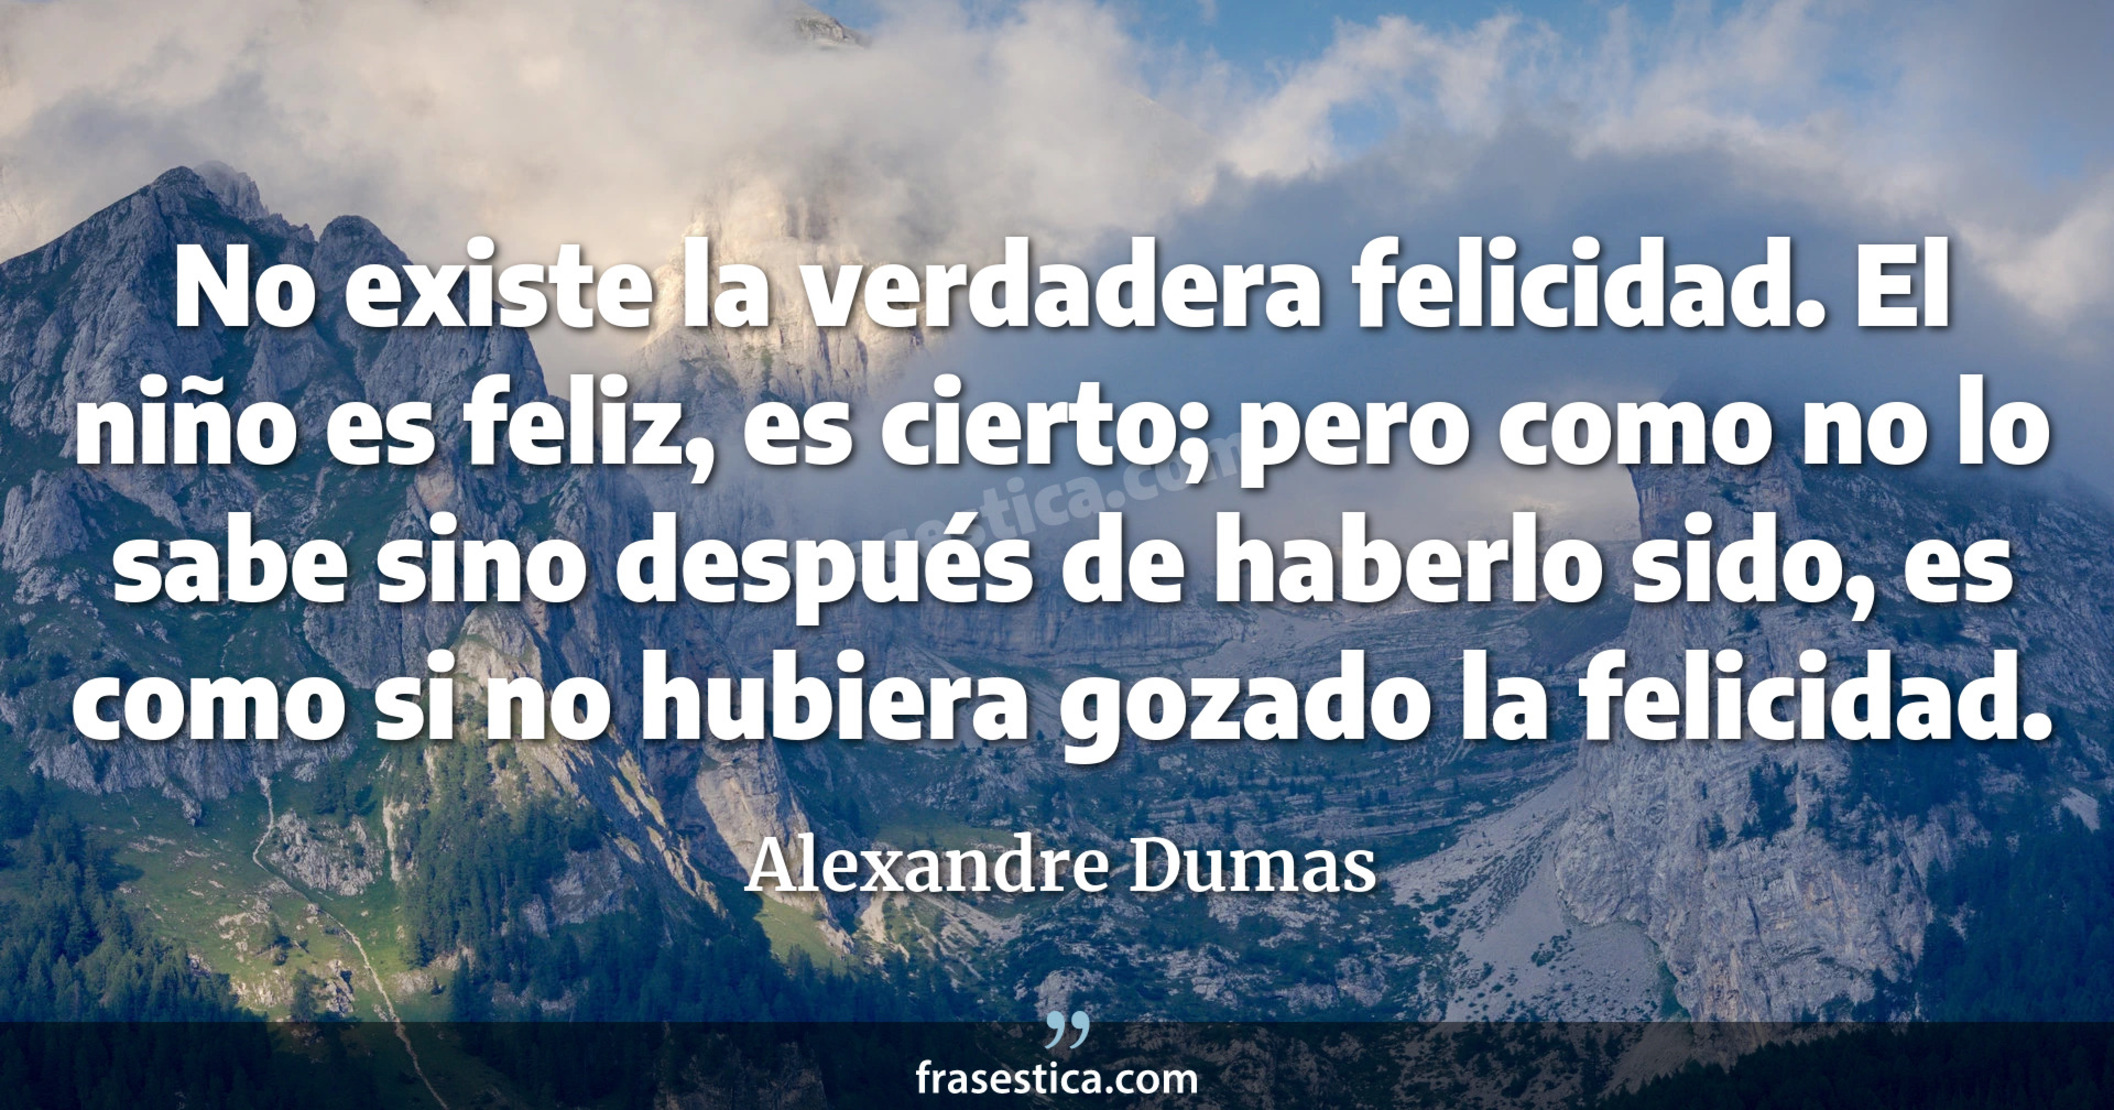 No existe la verdadera felicidad. El niño es feliz, es cierto; pero como no lo sabe sino después de haberlo sido, es como si no hubiera gozado la felicidad. - Alexandre Dumas